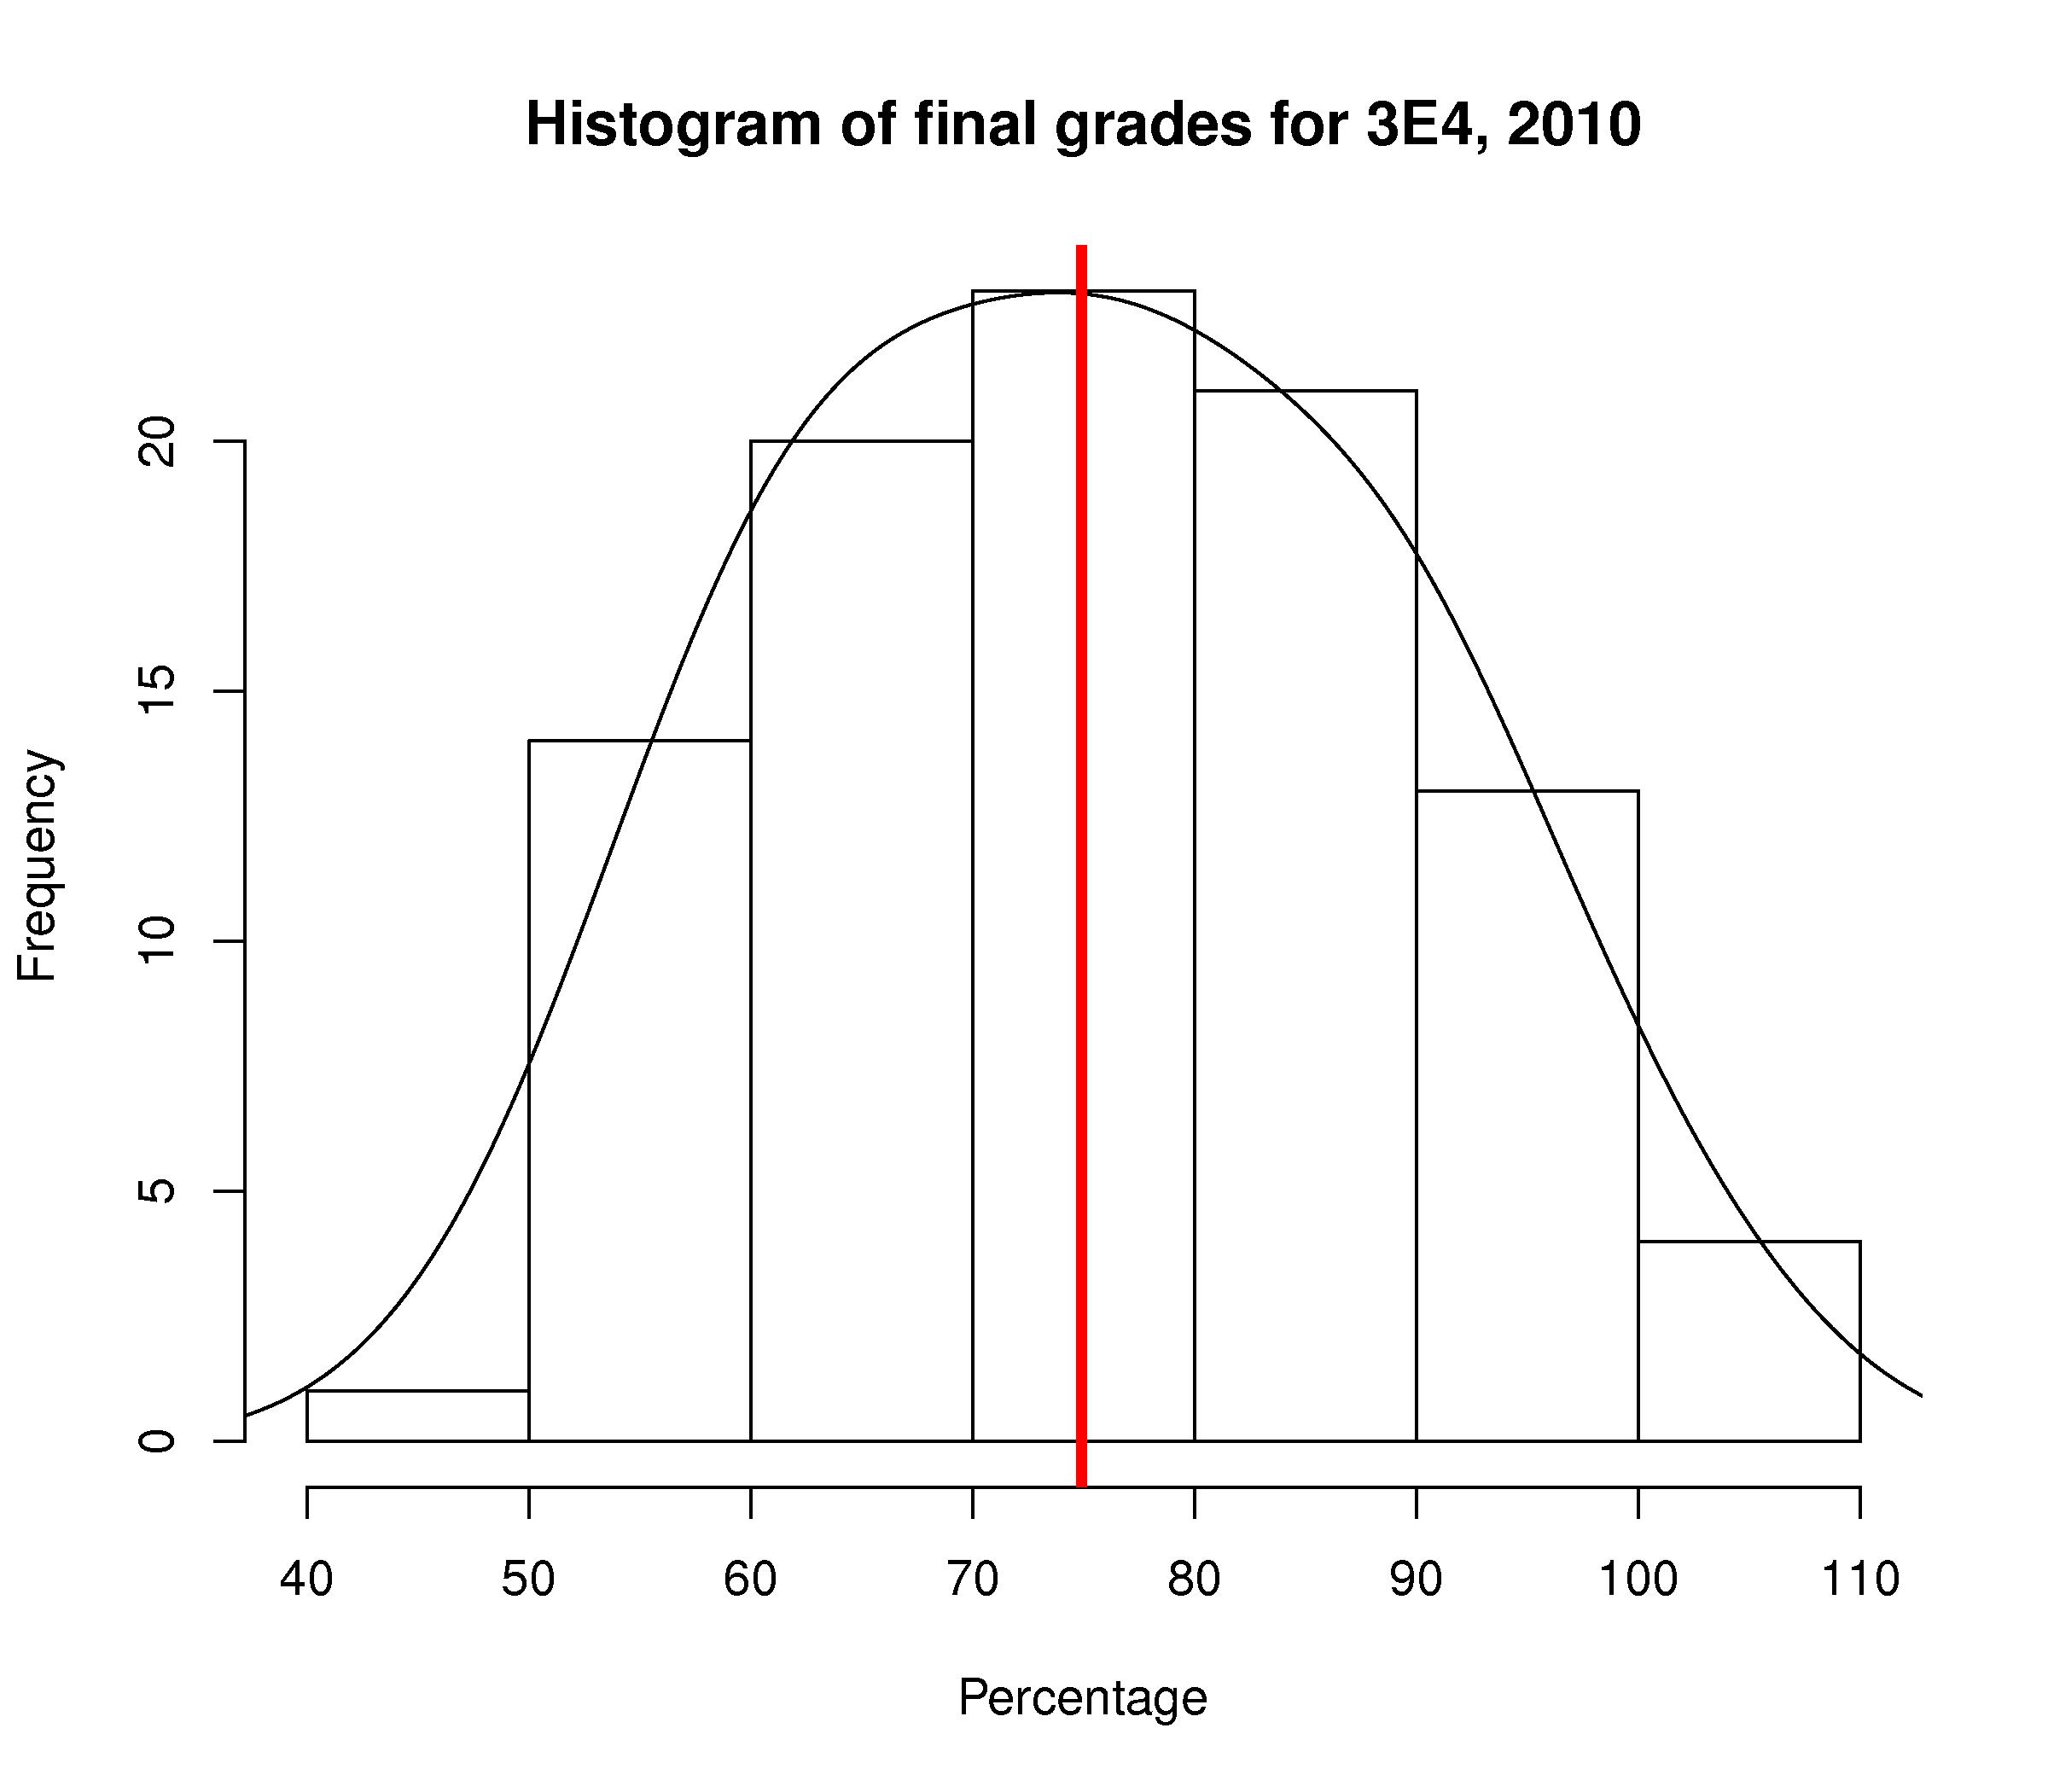 Historgram-of-final-grades-2010.jpg